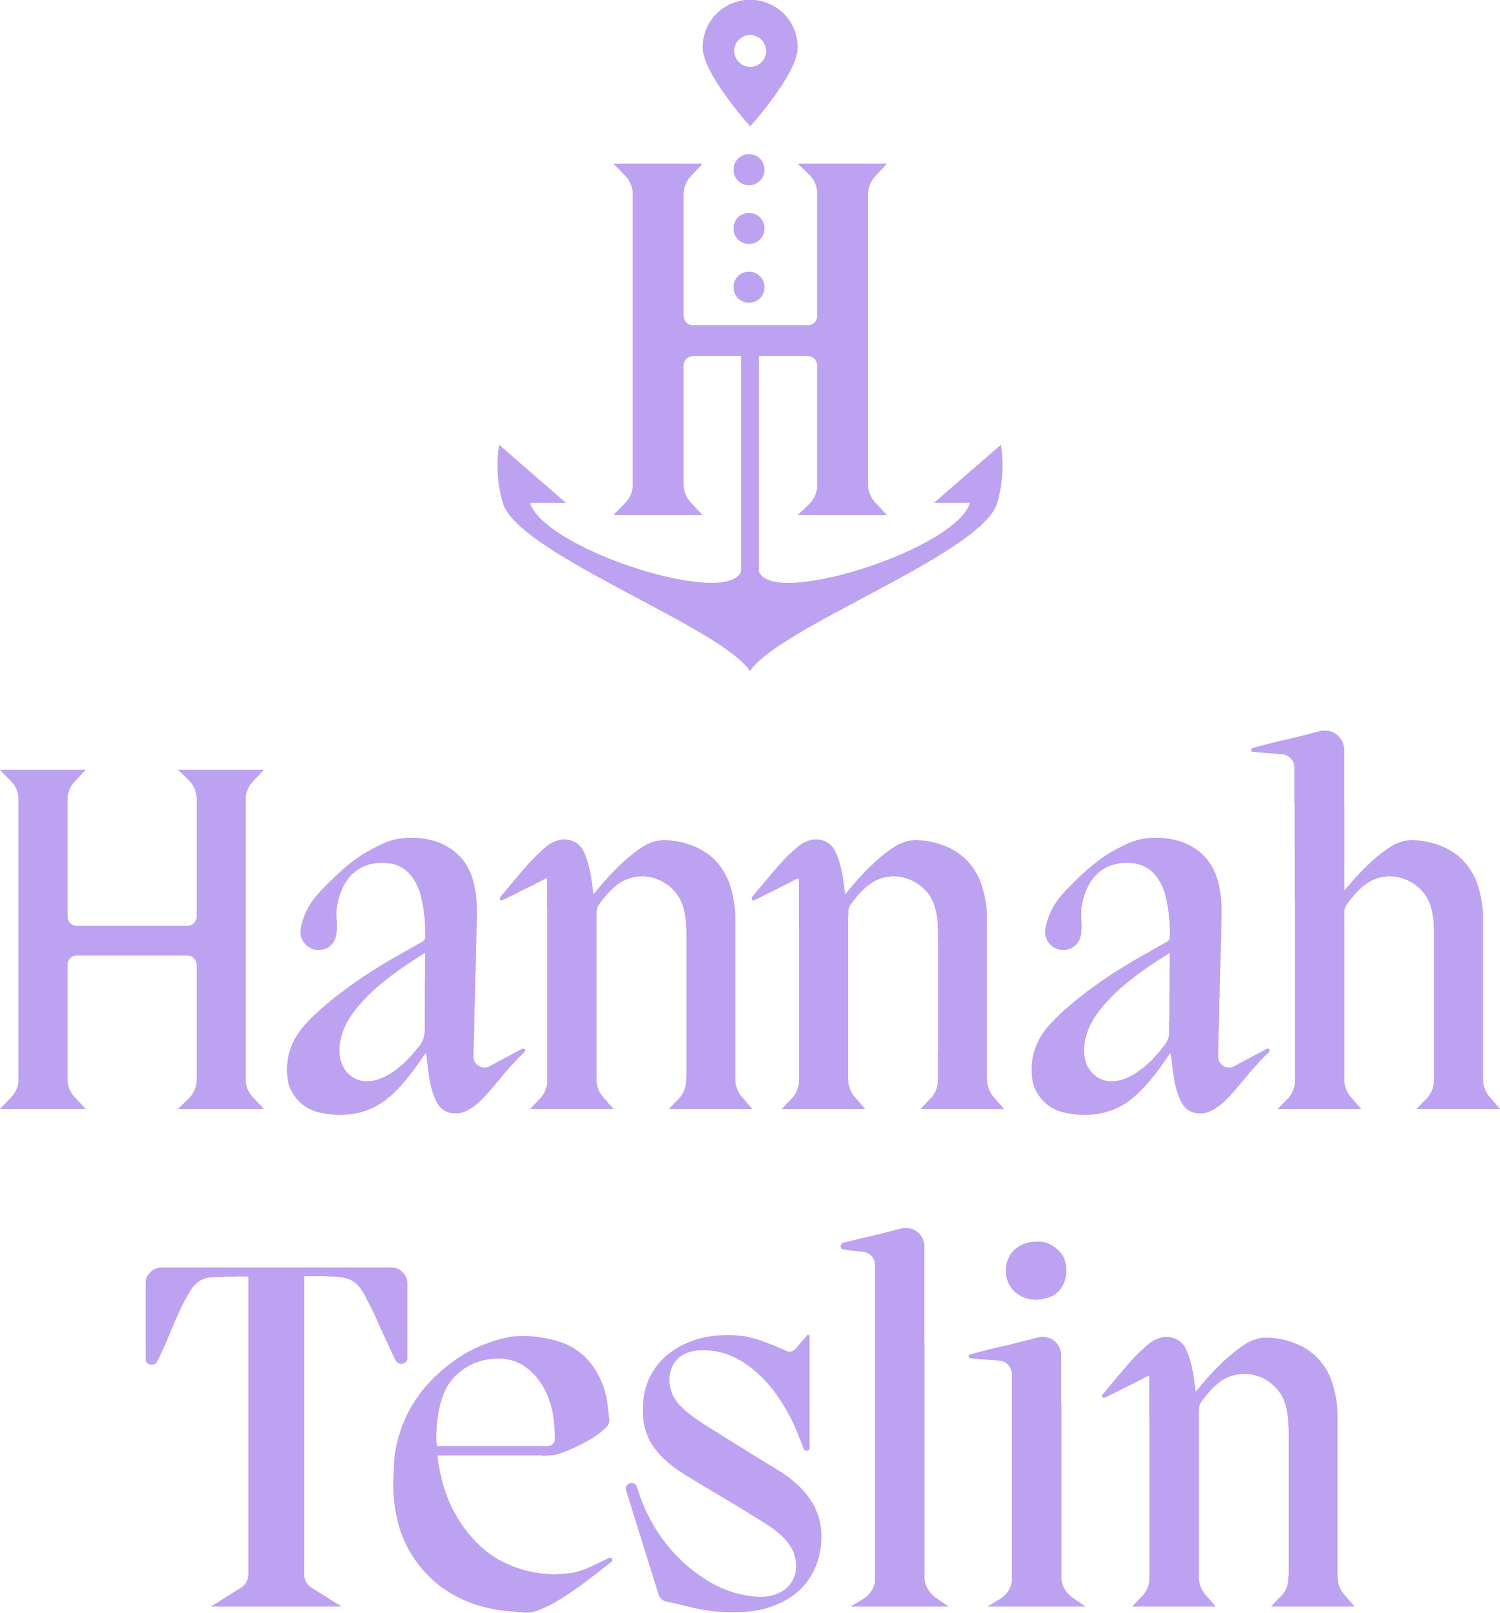 Hannah Teslin